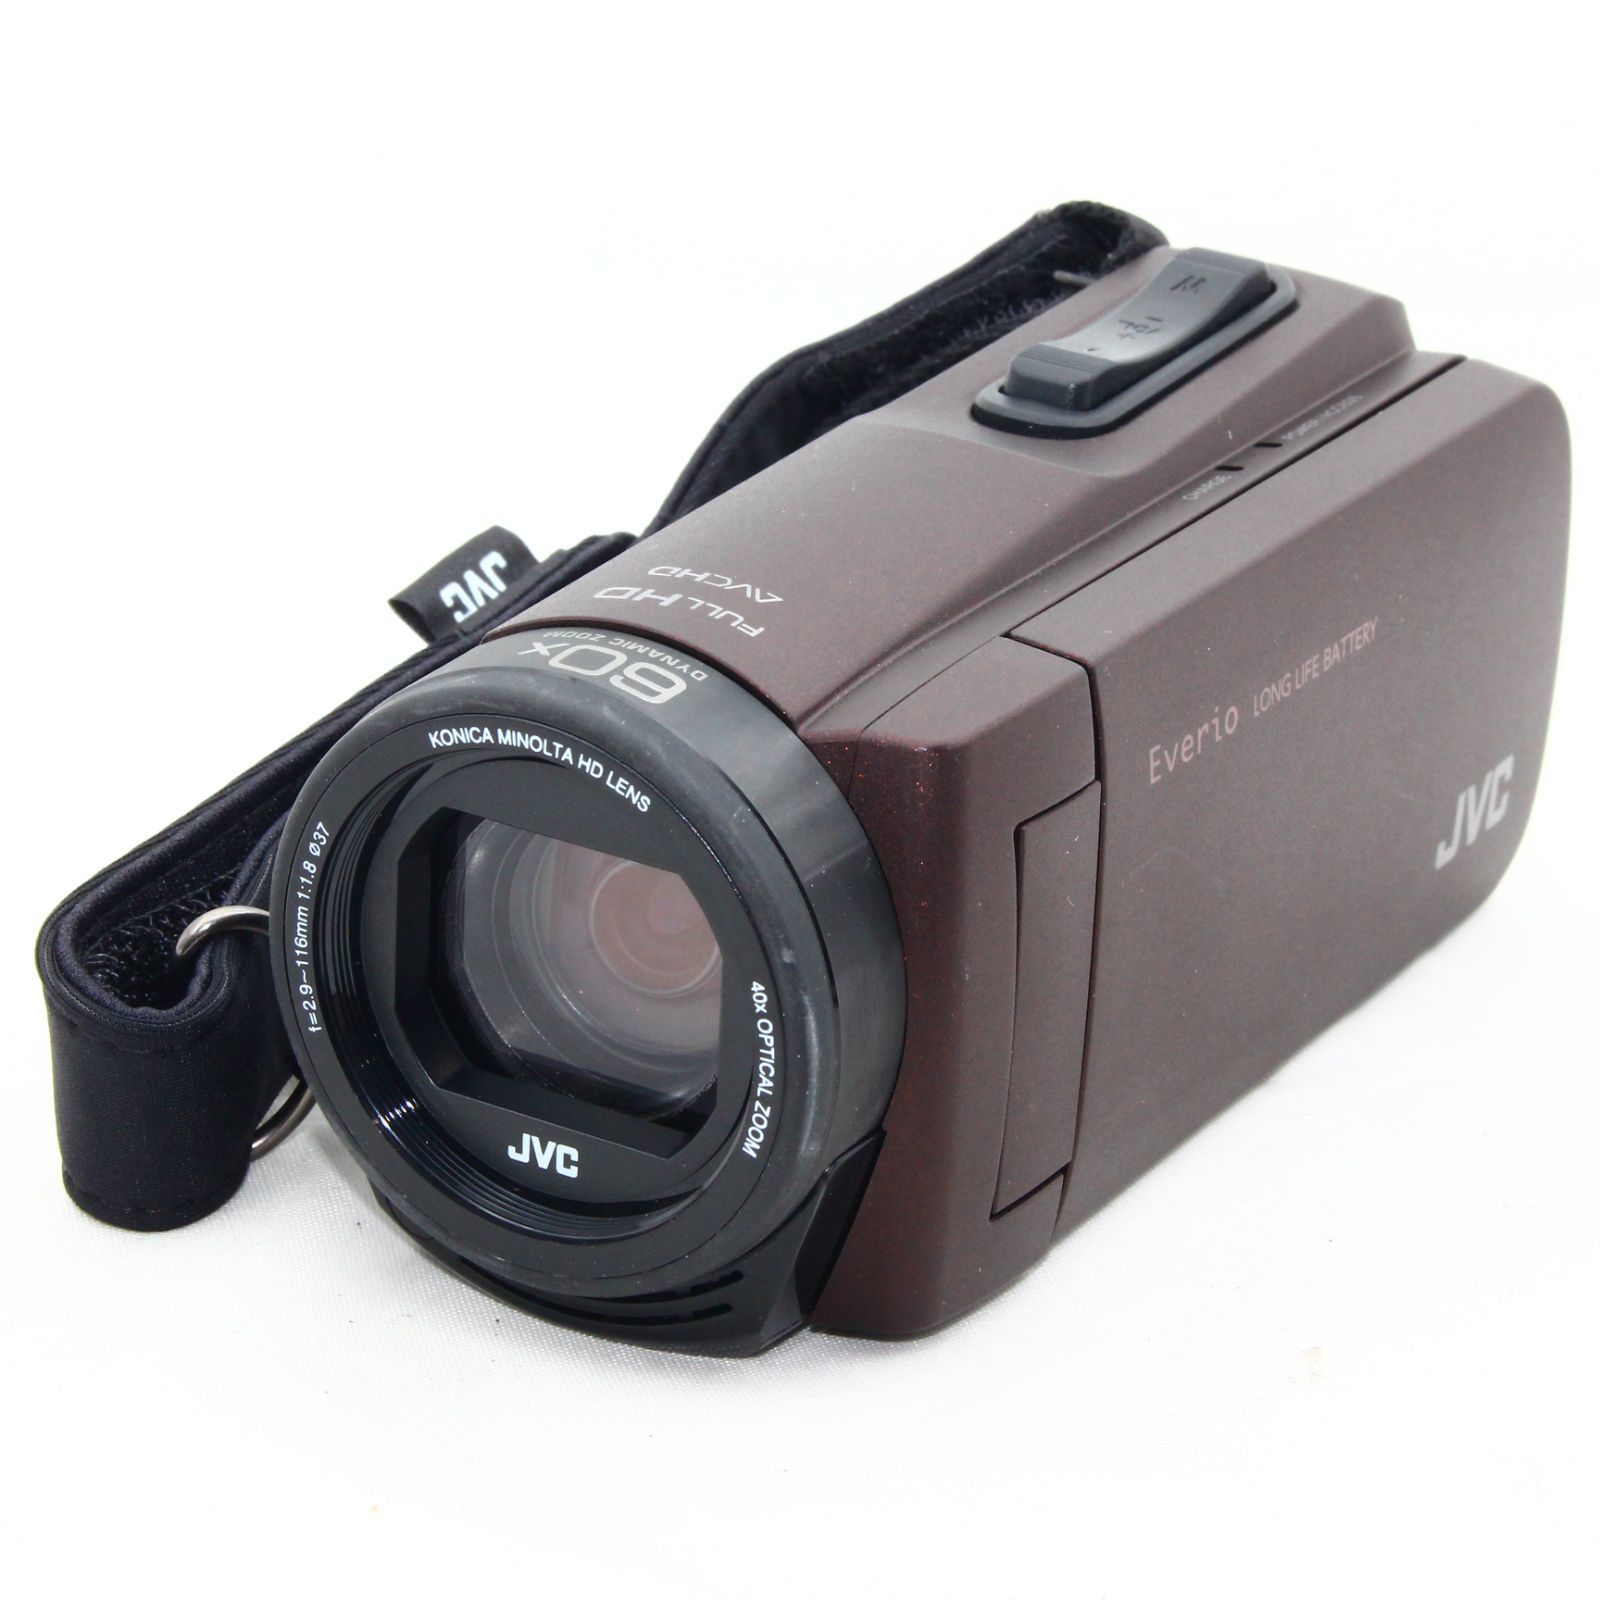 ビデオカメラ Everio ブラウン GZ-F270-Tそのお値段も難しいです